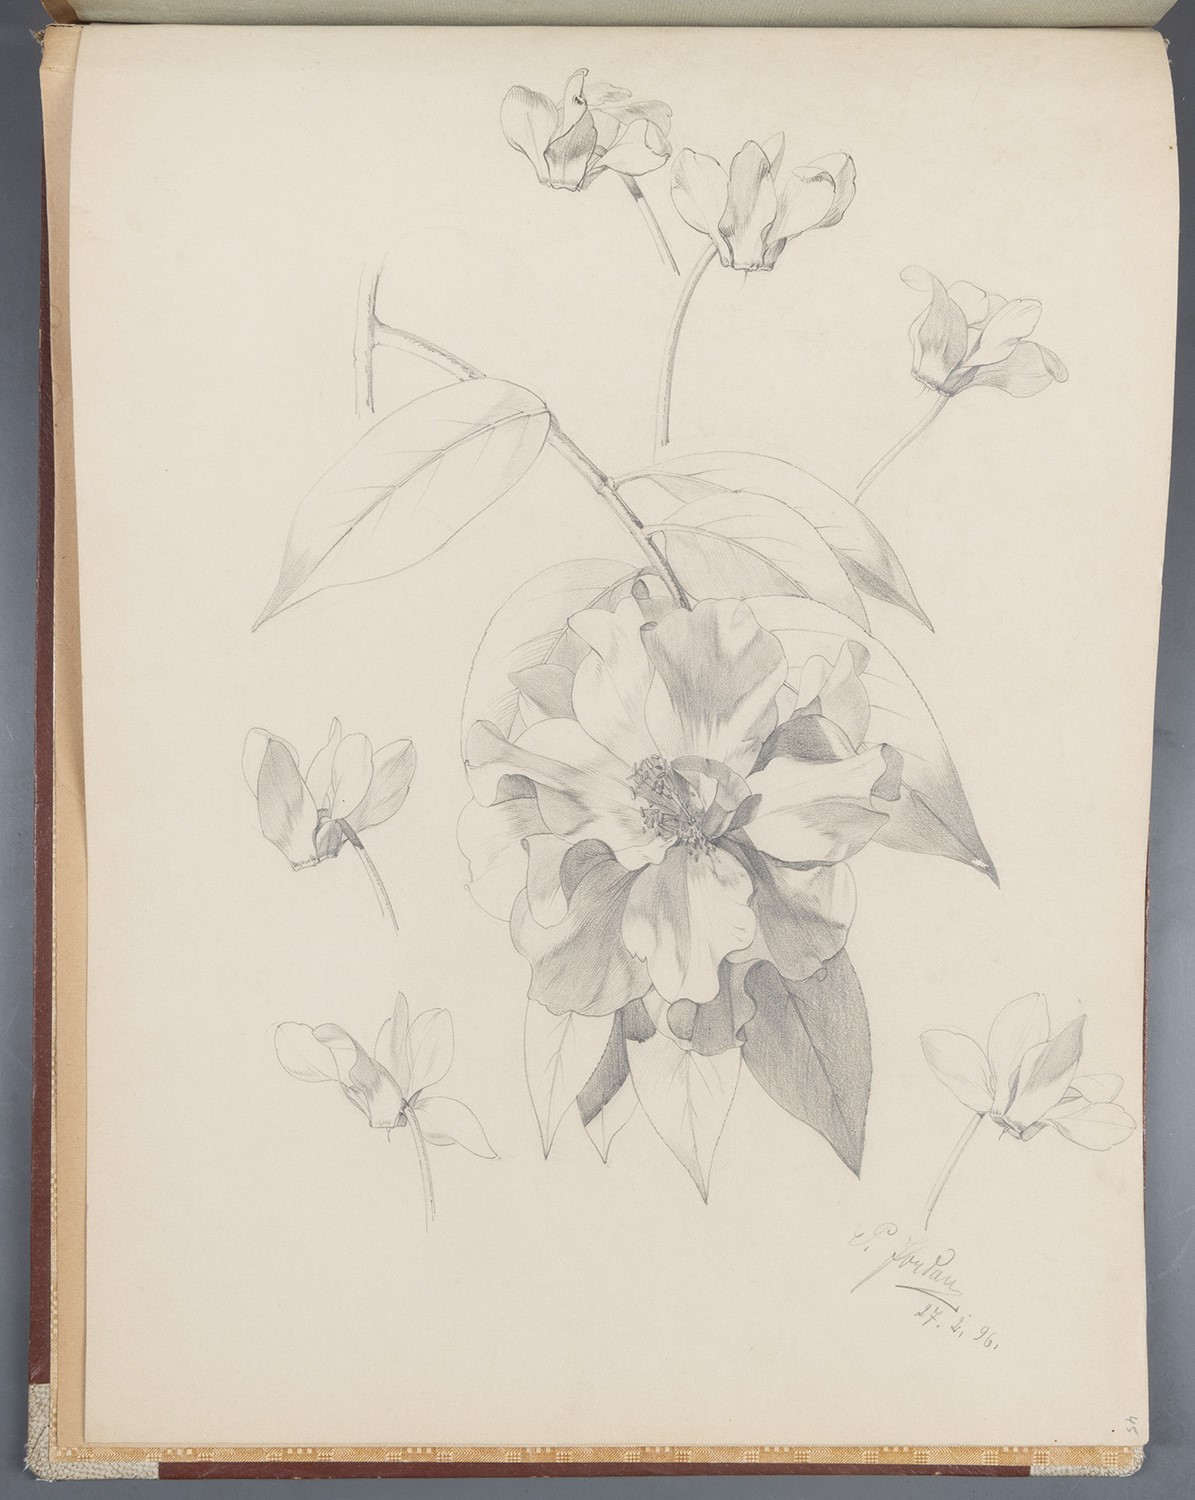 Blüten: Päonie, Alpenveilchen (Landesgeschichtliche Vereinigung für die Mark Brandenburg e.V., Archiv CC BY)